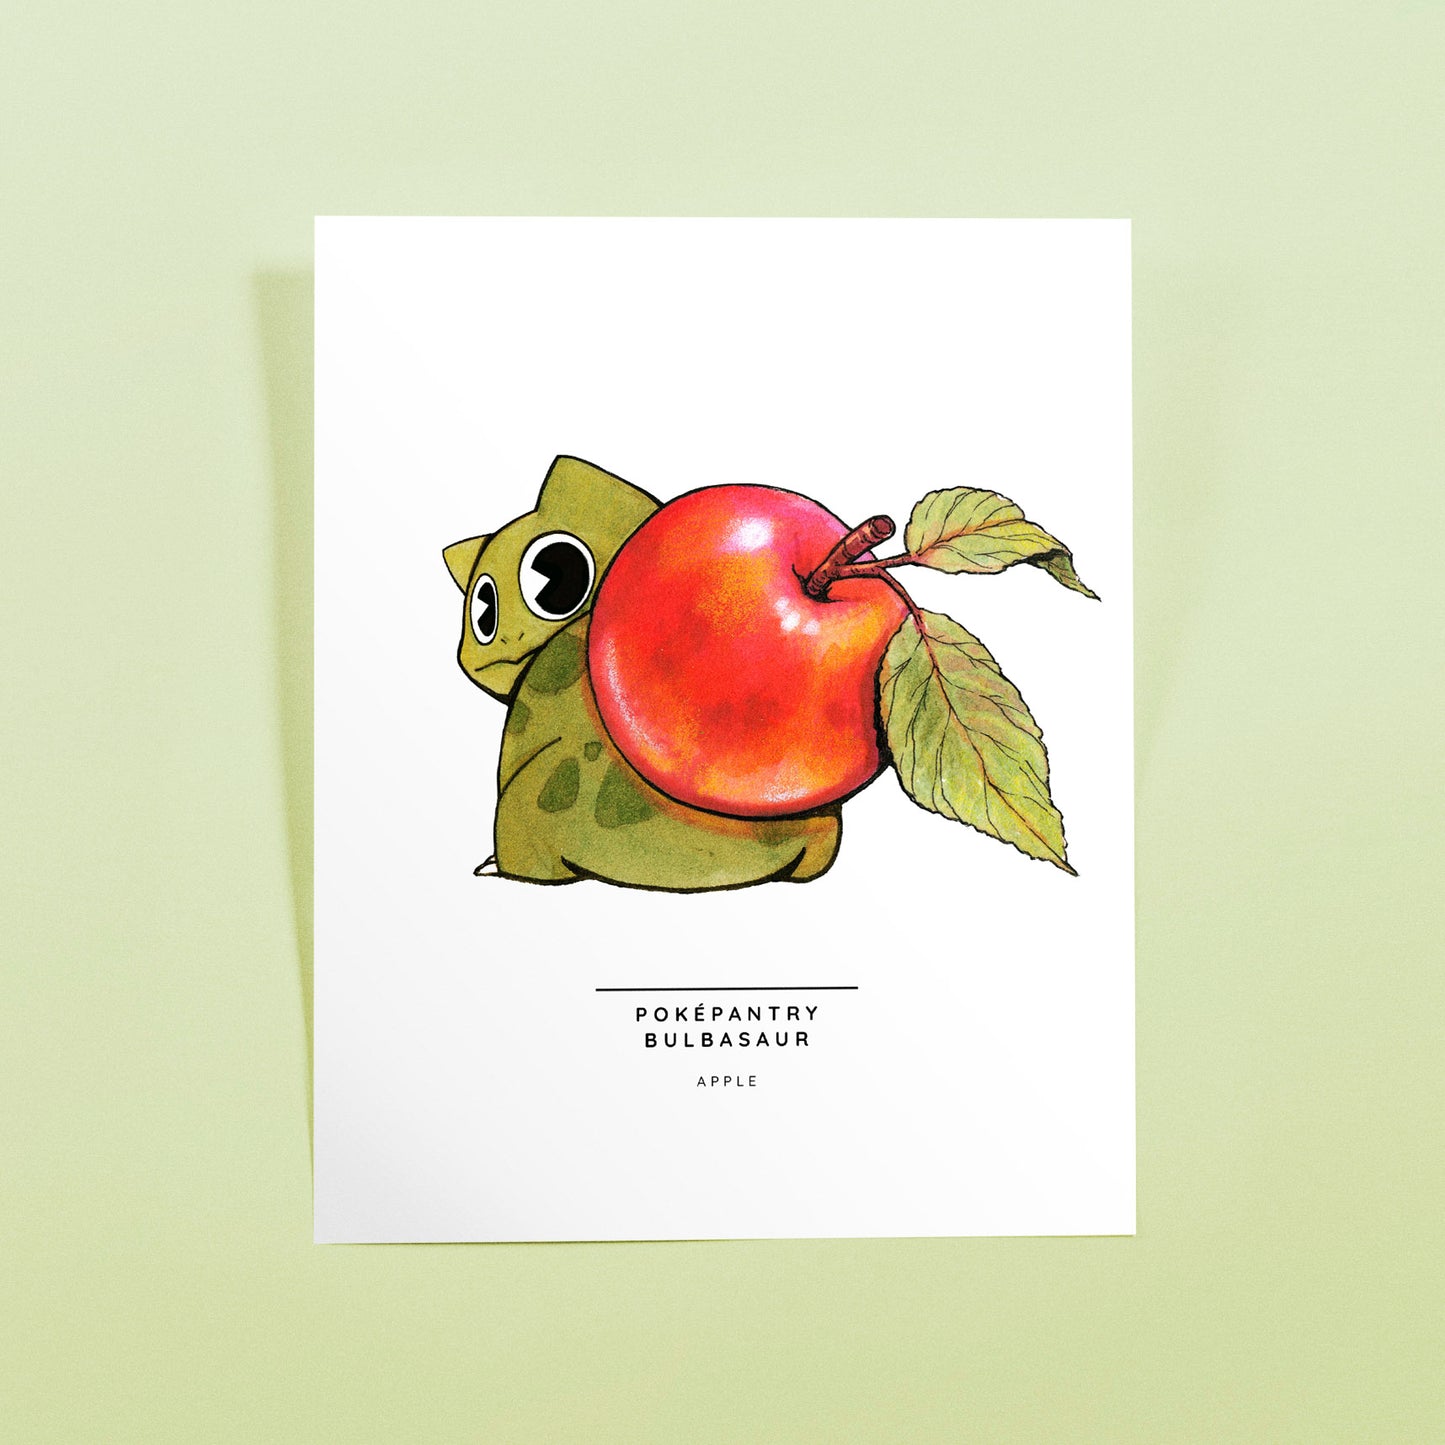 Poképantry Bulbasaur: Apple